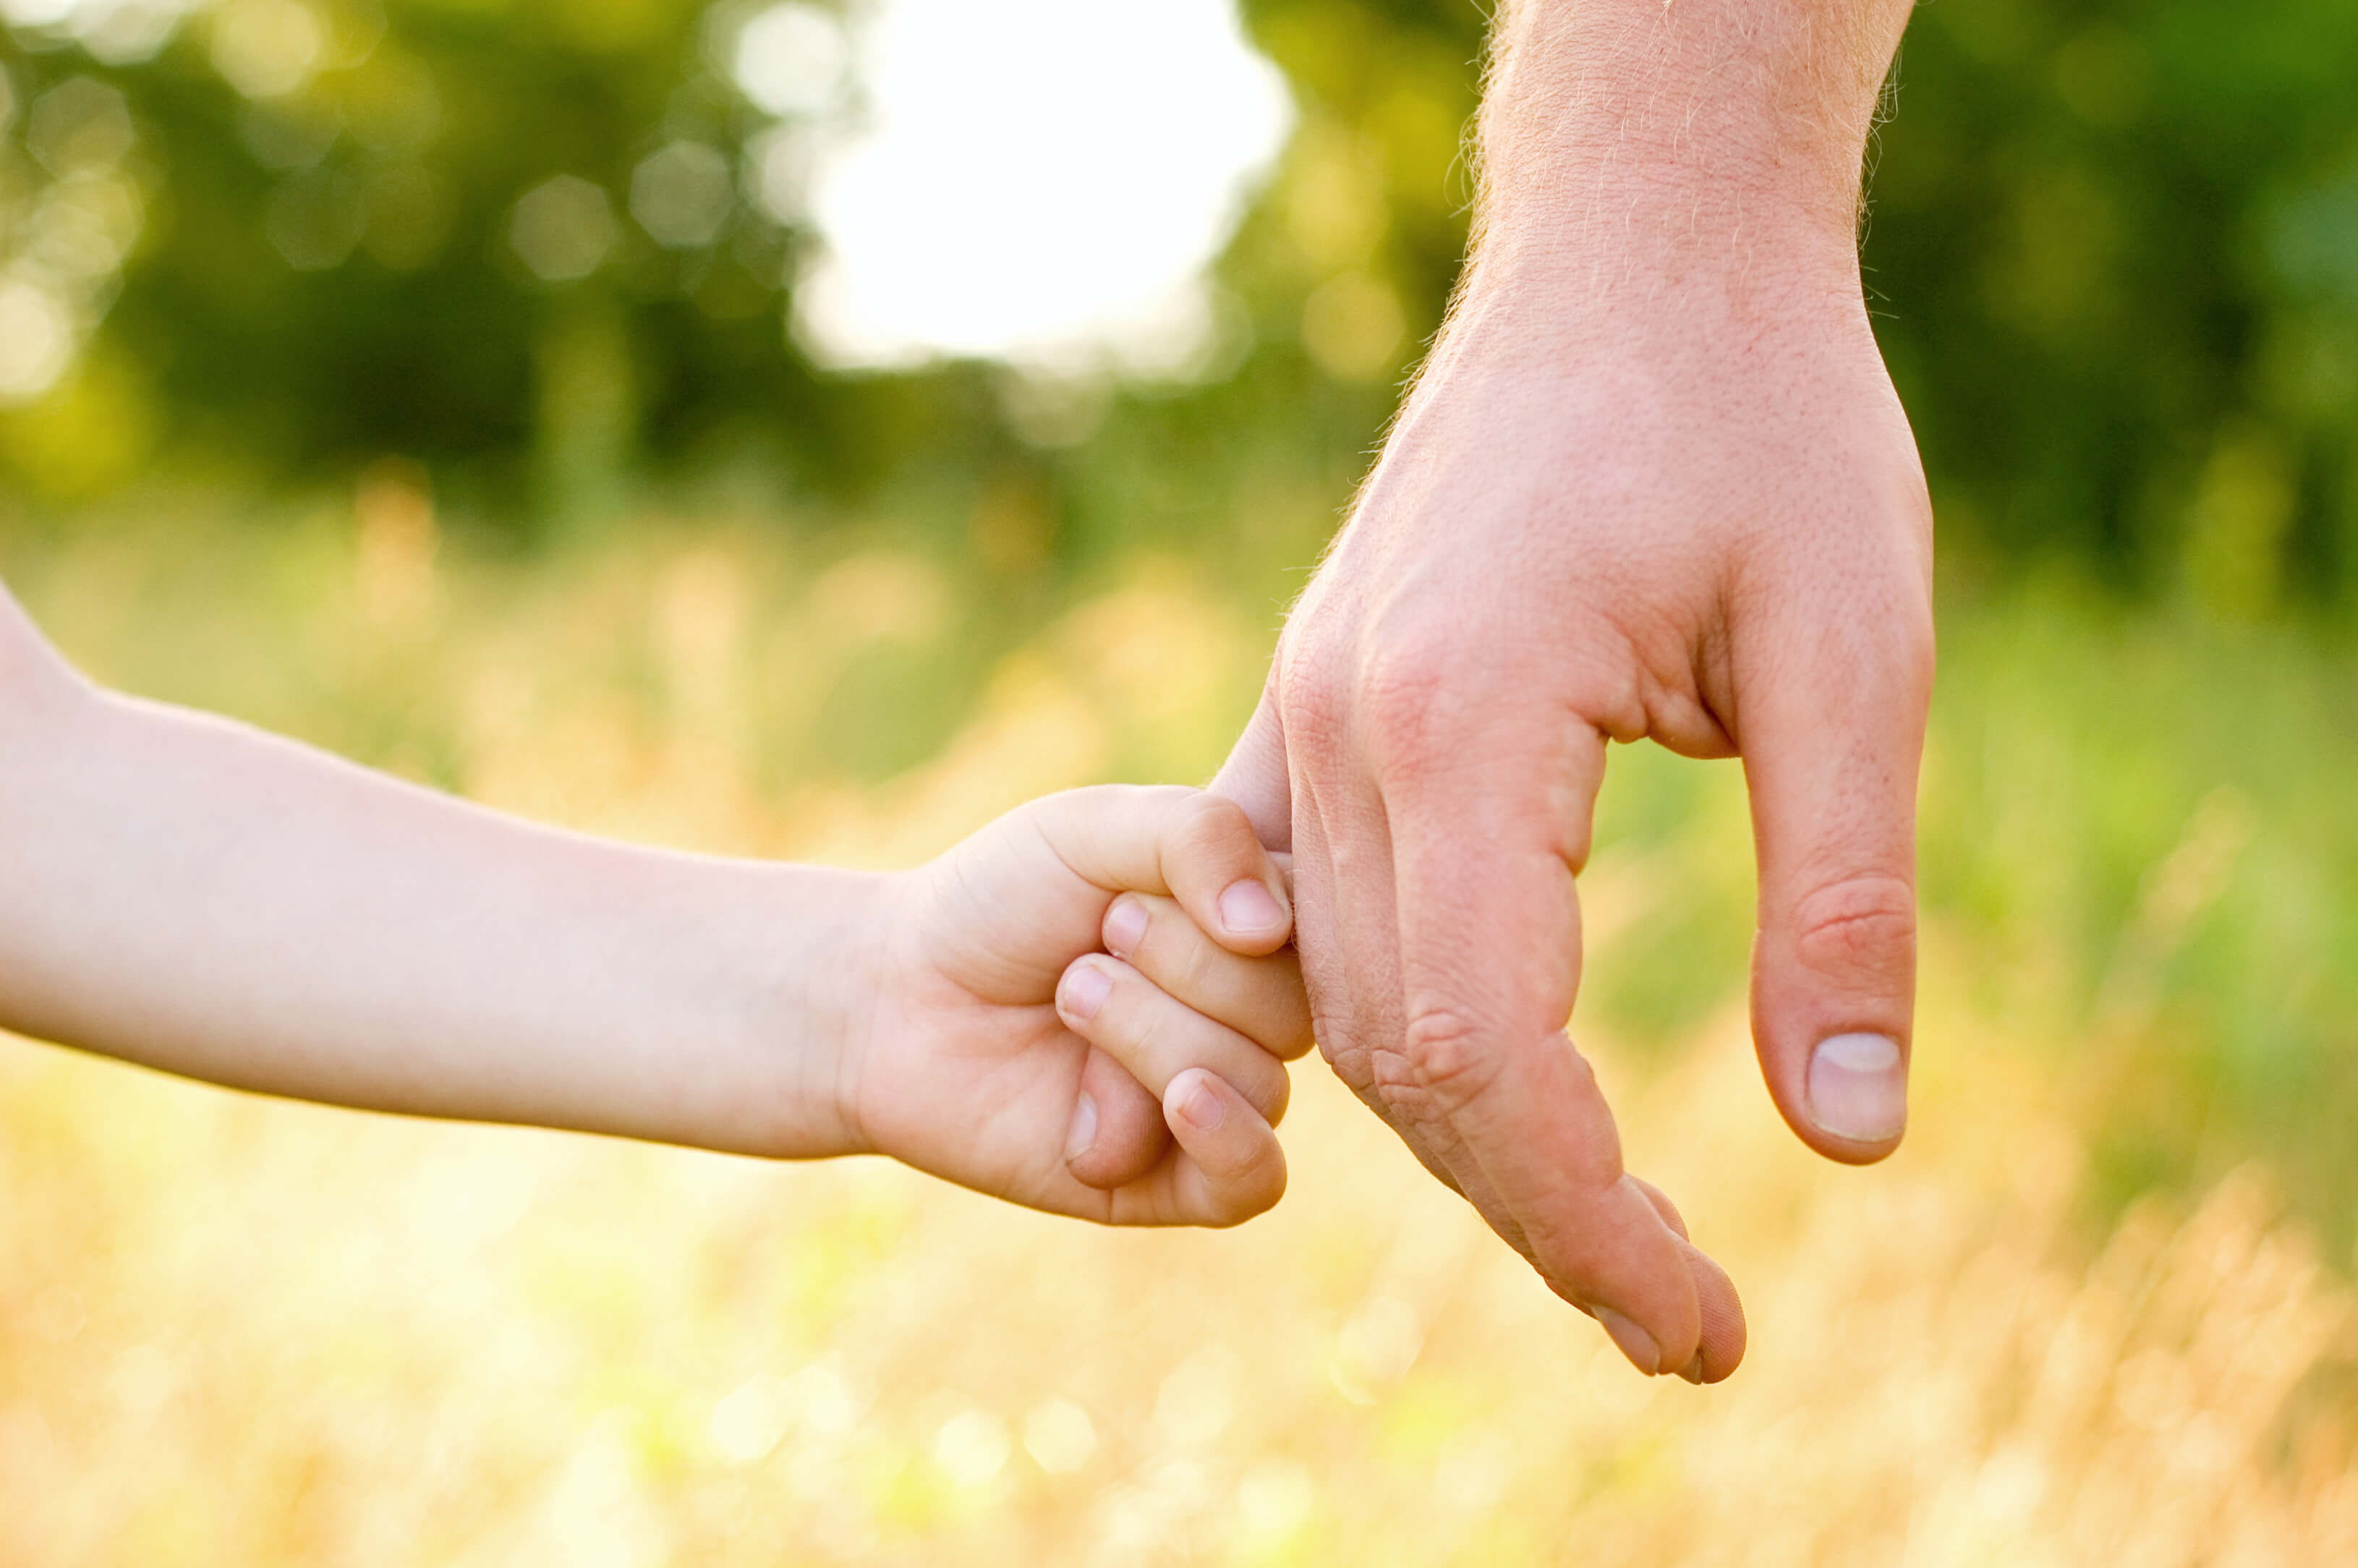 Kind und Vater halten draußen im Grünen Händchen